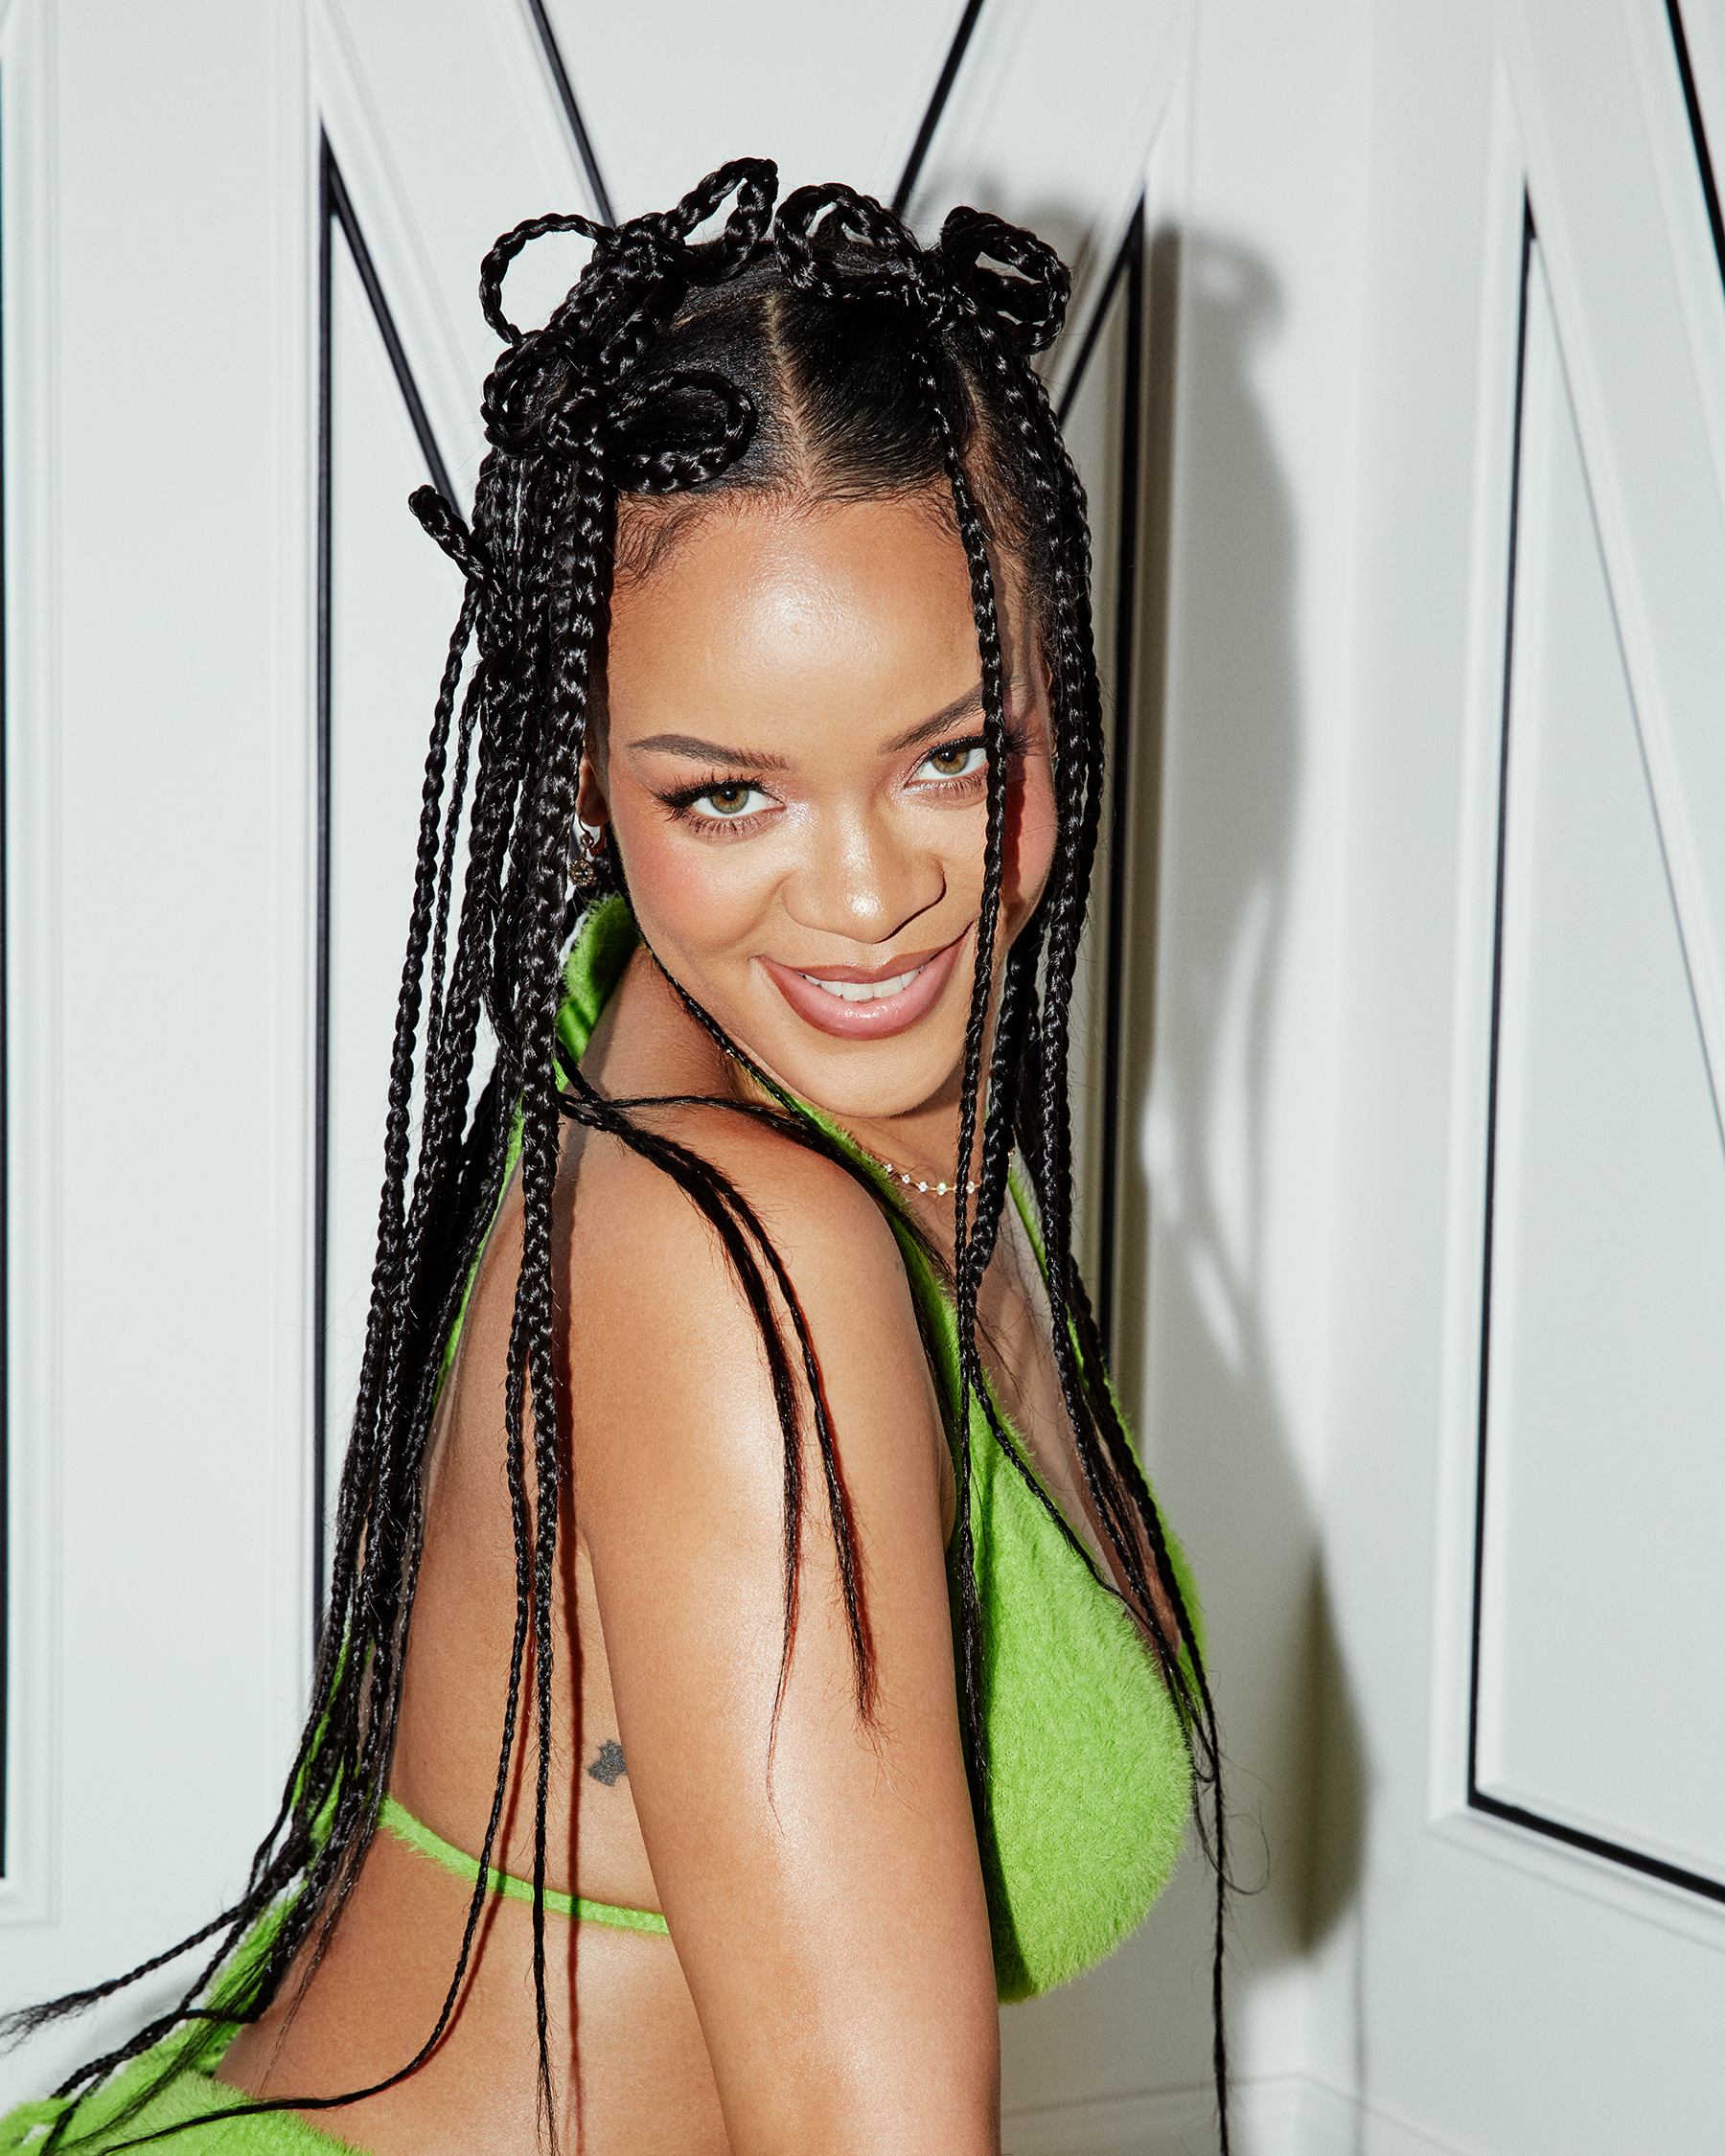 FOTOS Rihanna se roba el show! - Photo 15